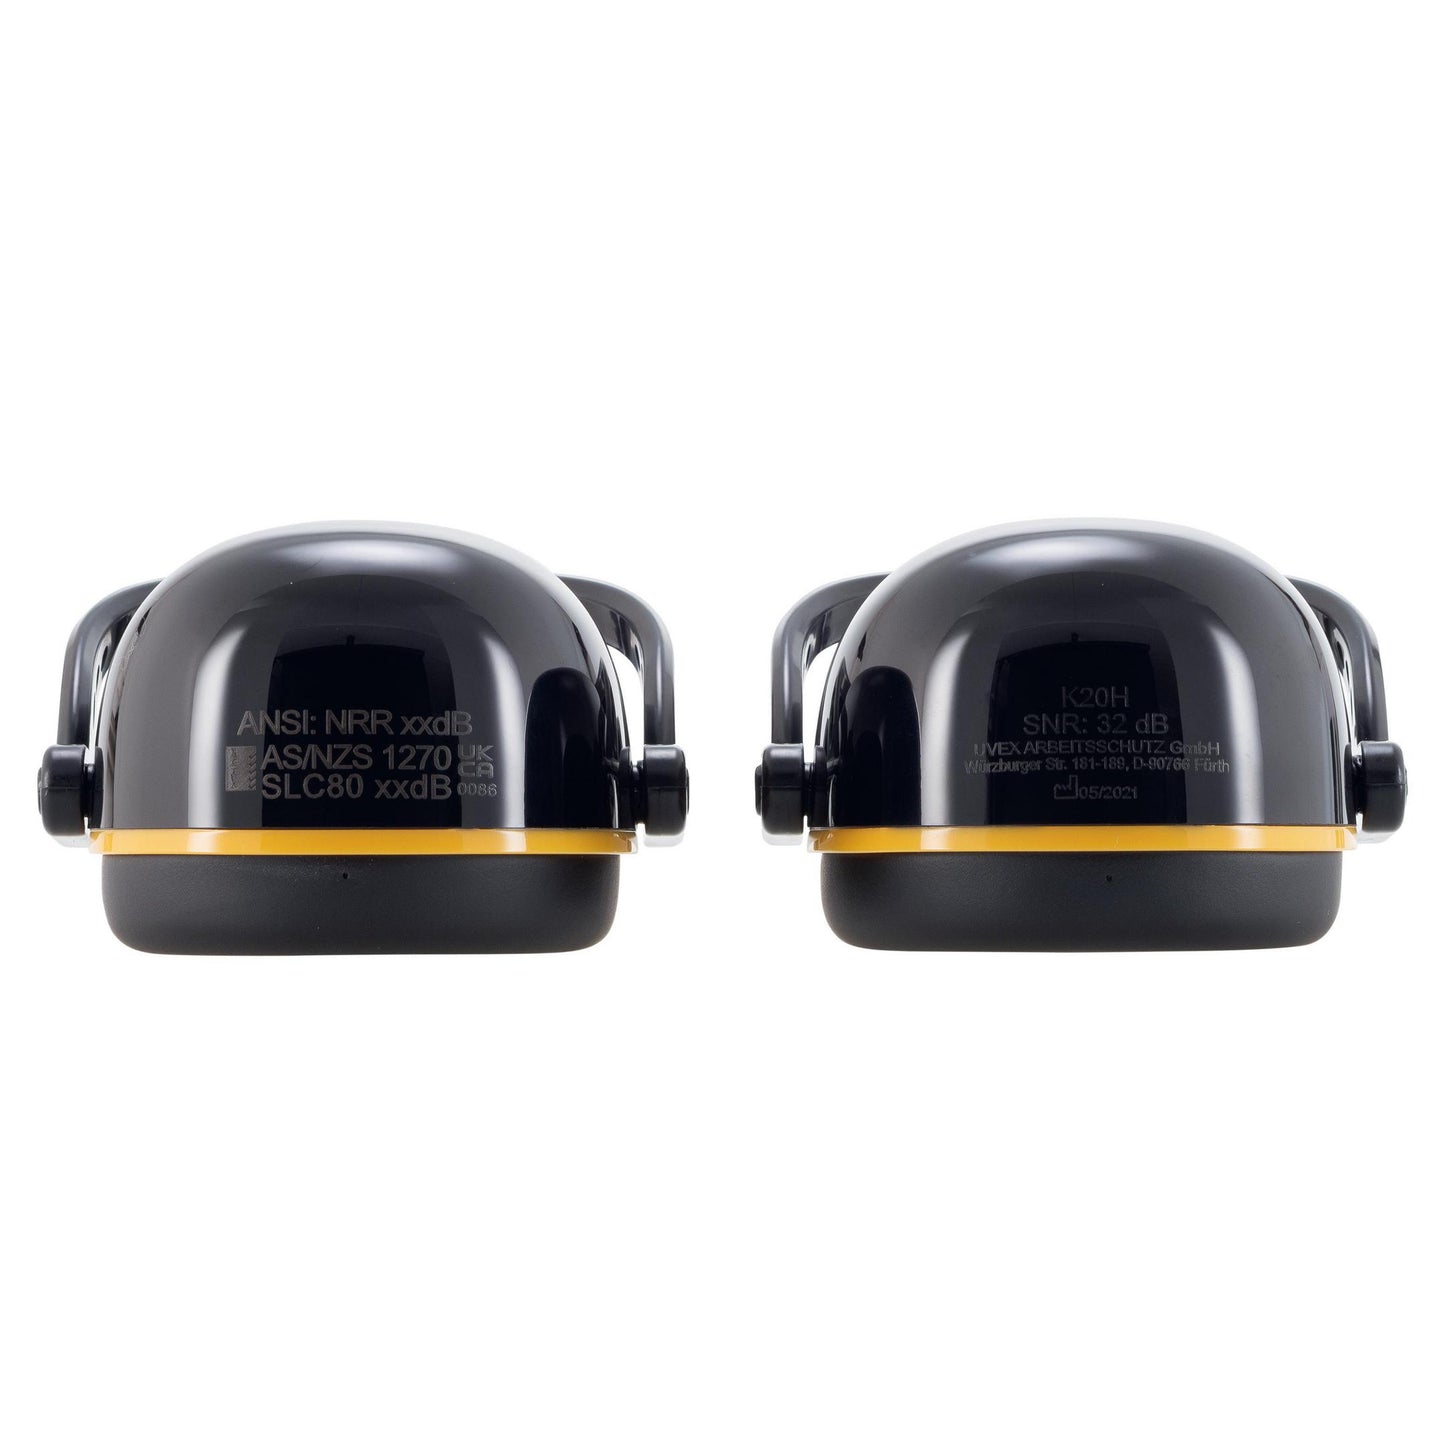 uvex K20H dielektrische Helmkapsel SNR 30 dB